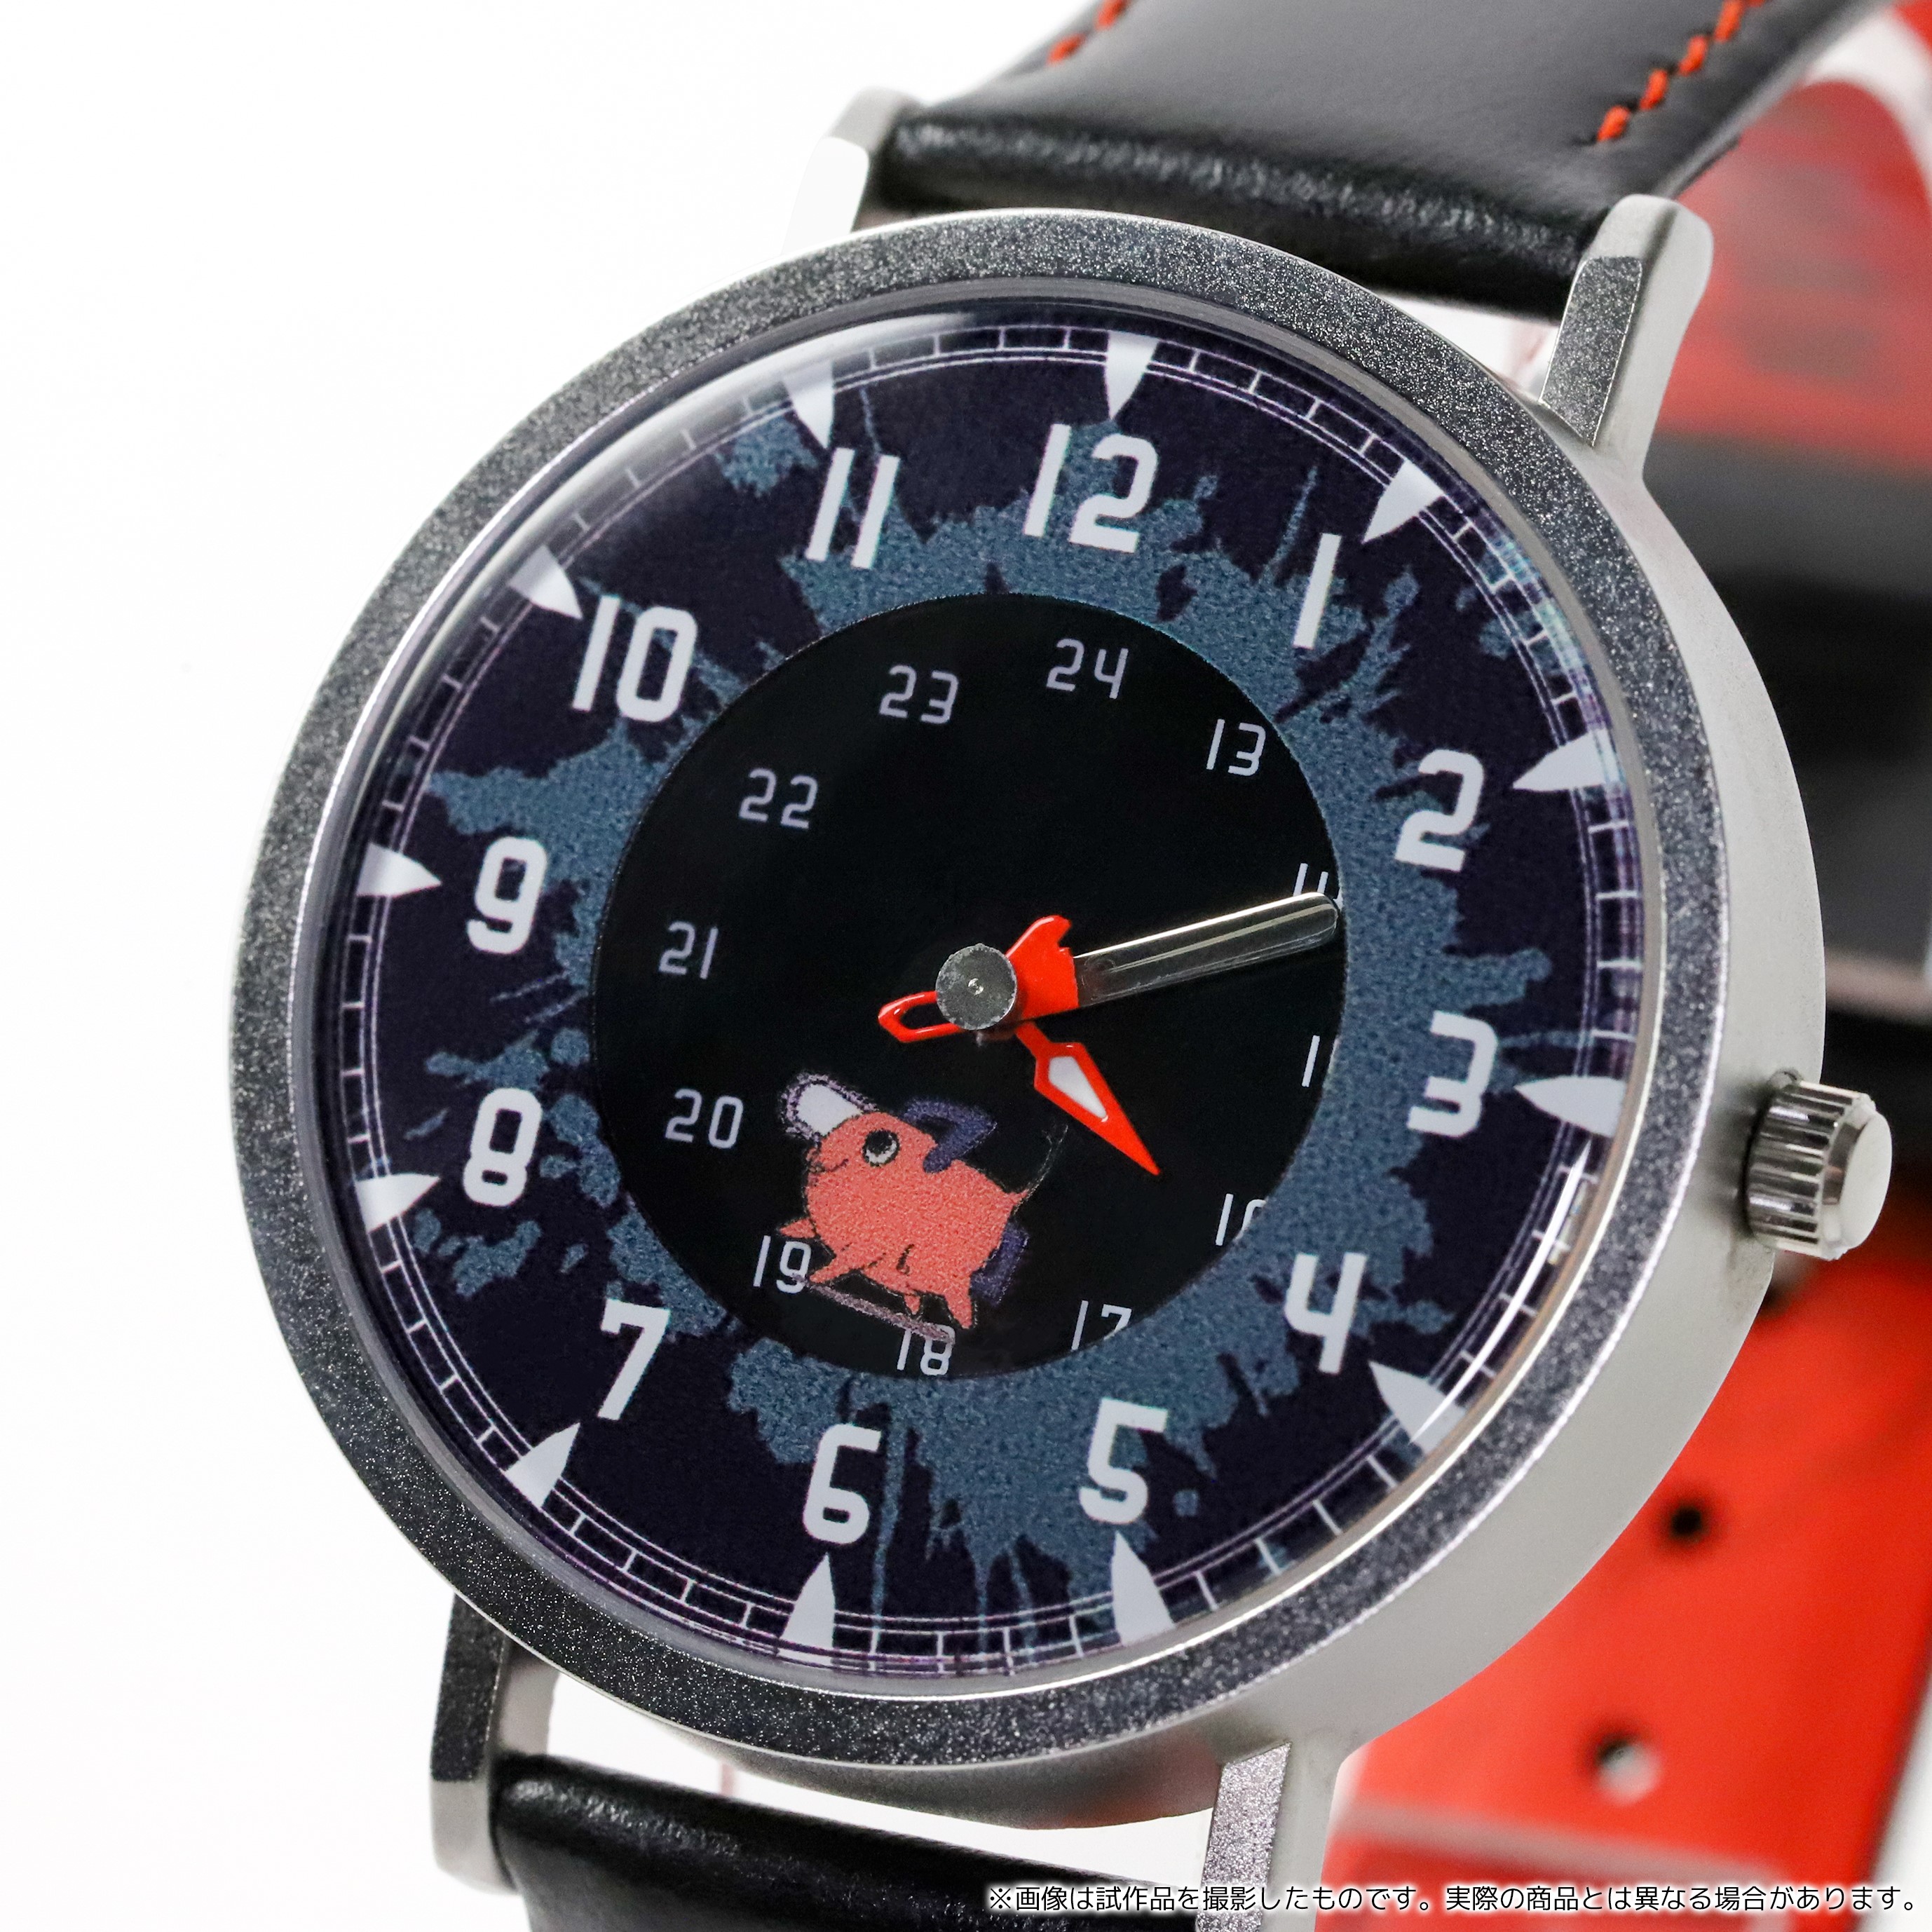 チェンソーマン の腕時計が発売 長針にはチェンソー 回転ディスク型の秒針にはポチタをデザイン Pash Plus